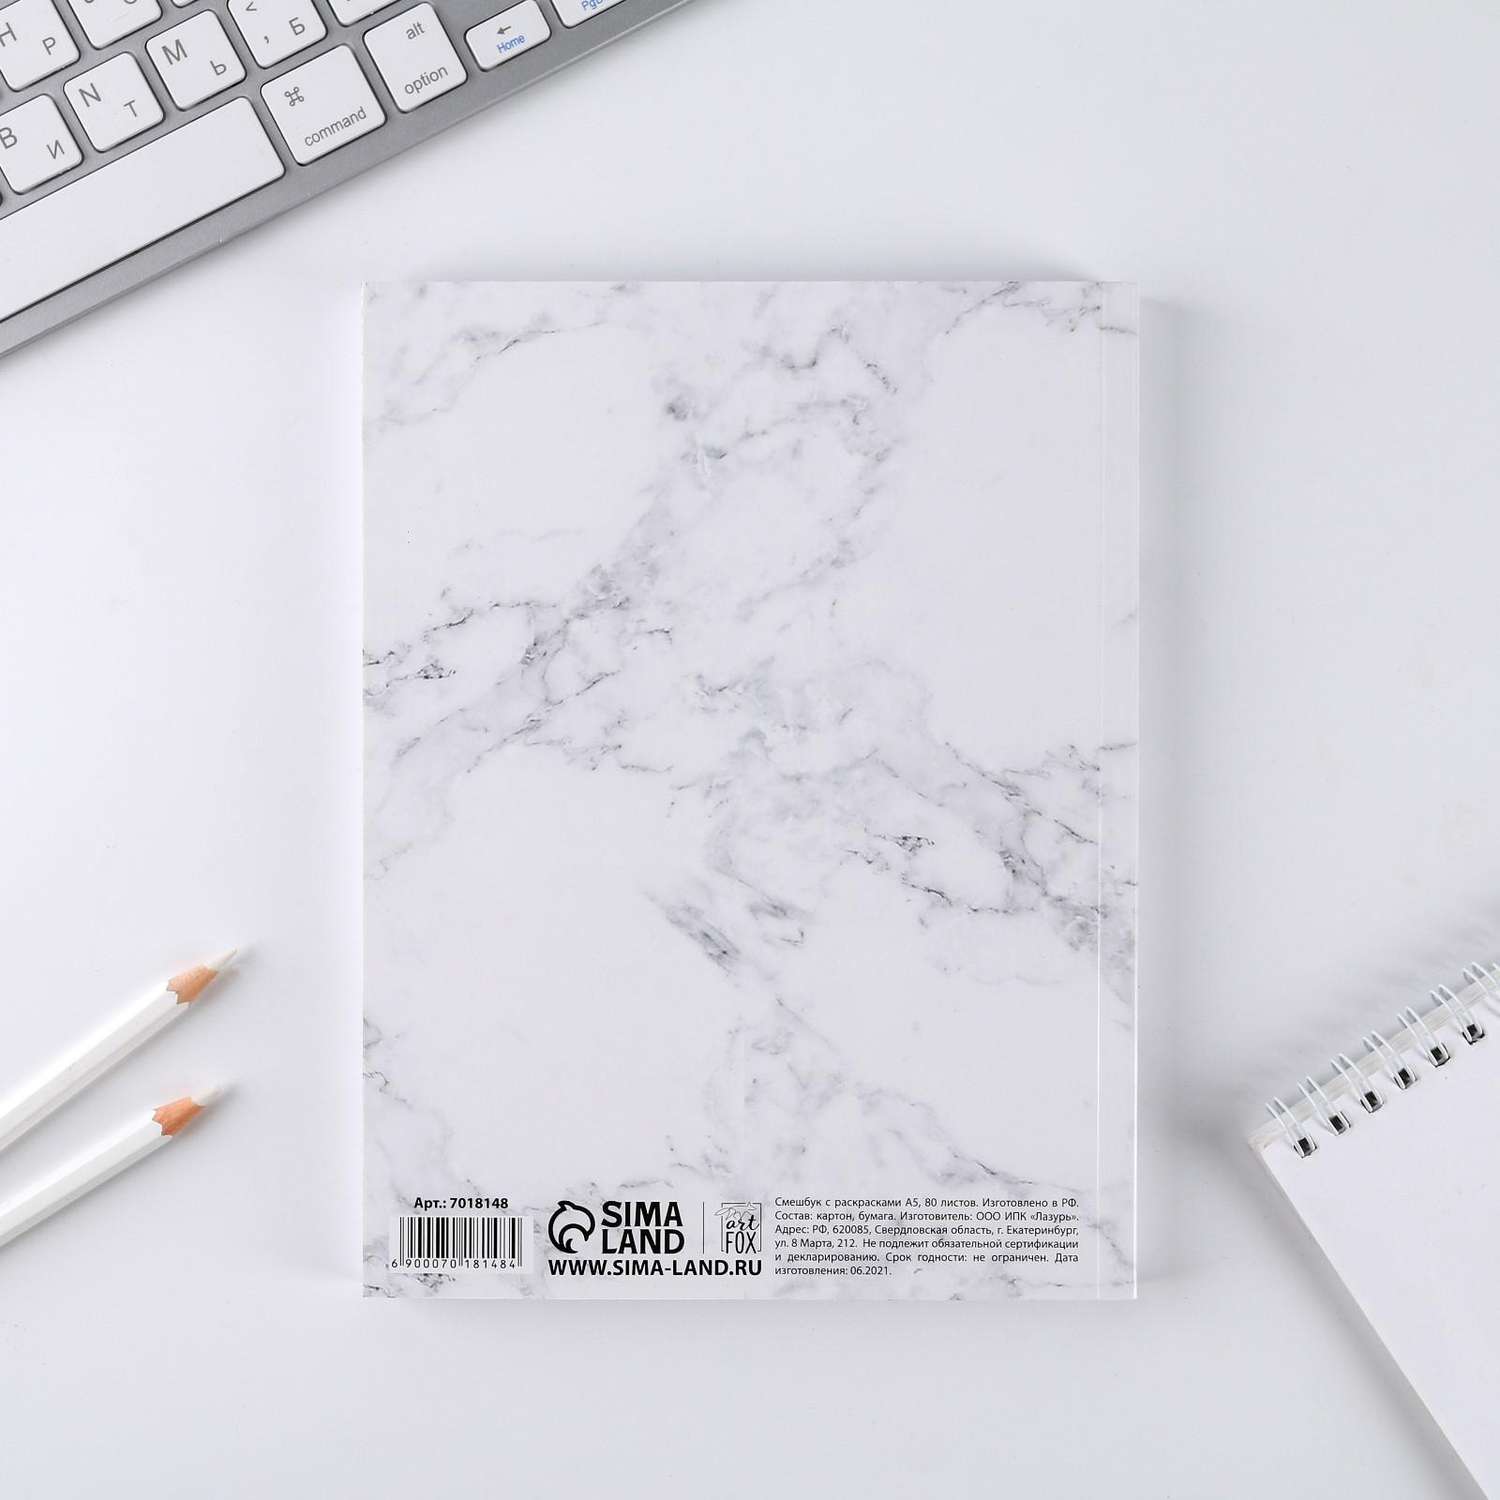 Ежедневник-смешбук ArtFox с раскраской антистресс «365 творческий дней» А5 80 листов - фото 11